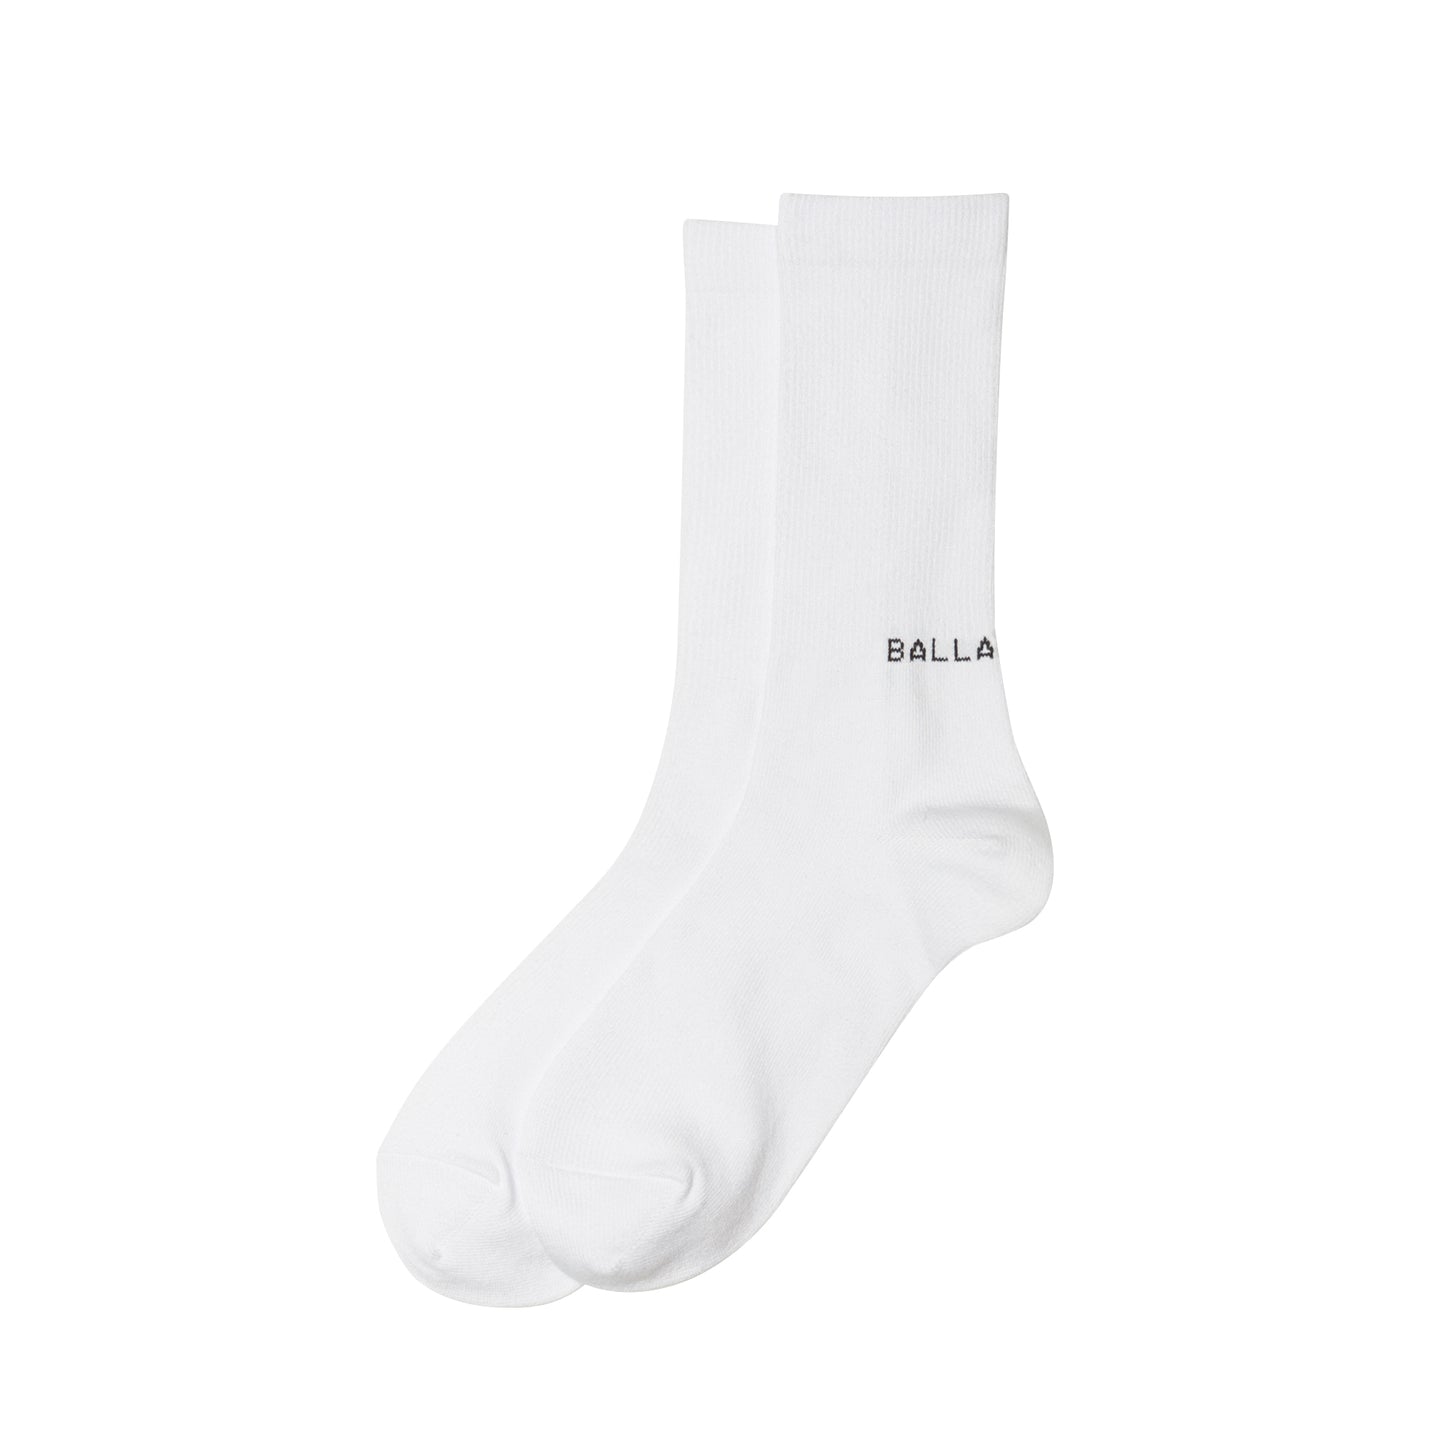 Everyday 3-Pack Socks (white/black/gray)